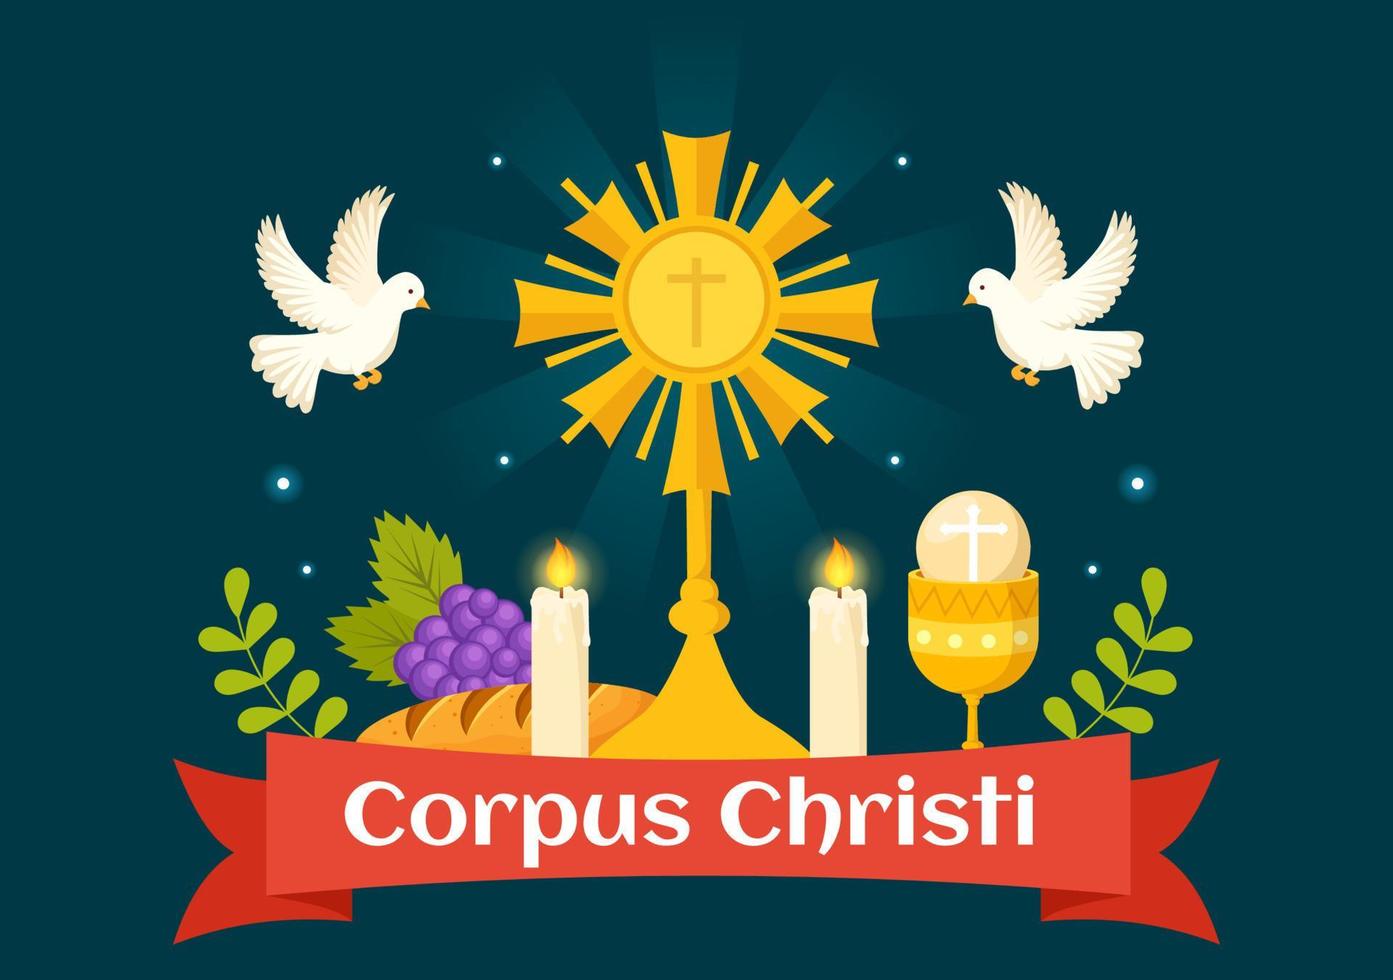 corpus christi katolik religiös Semester vektor illustration med fest dag, korsa, bröd och vindruvor i platt tecknad serie hand dragen affisch mallar